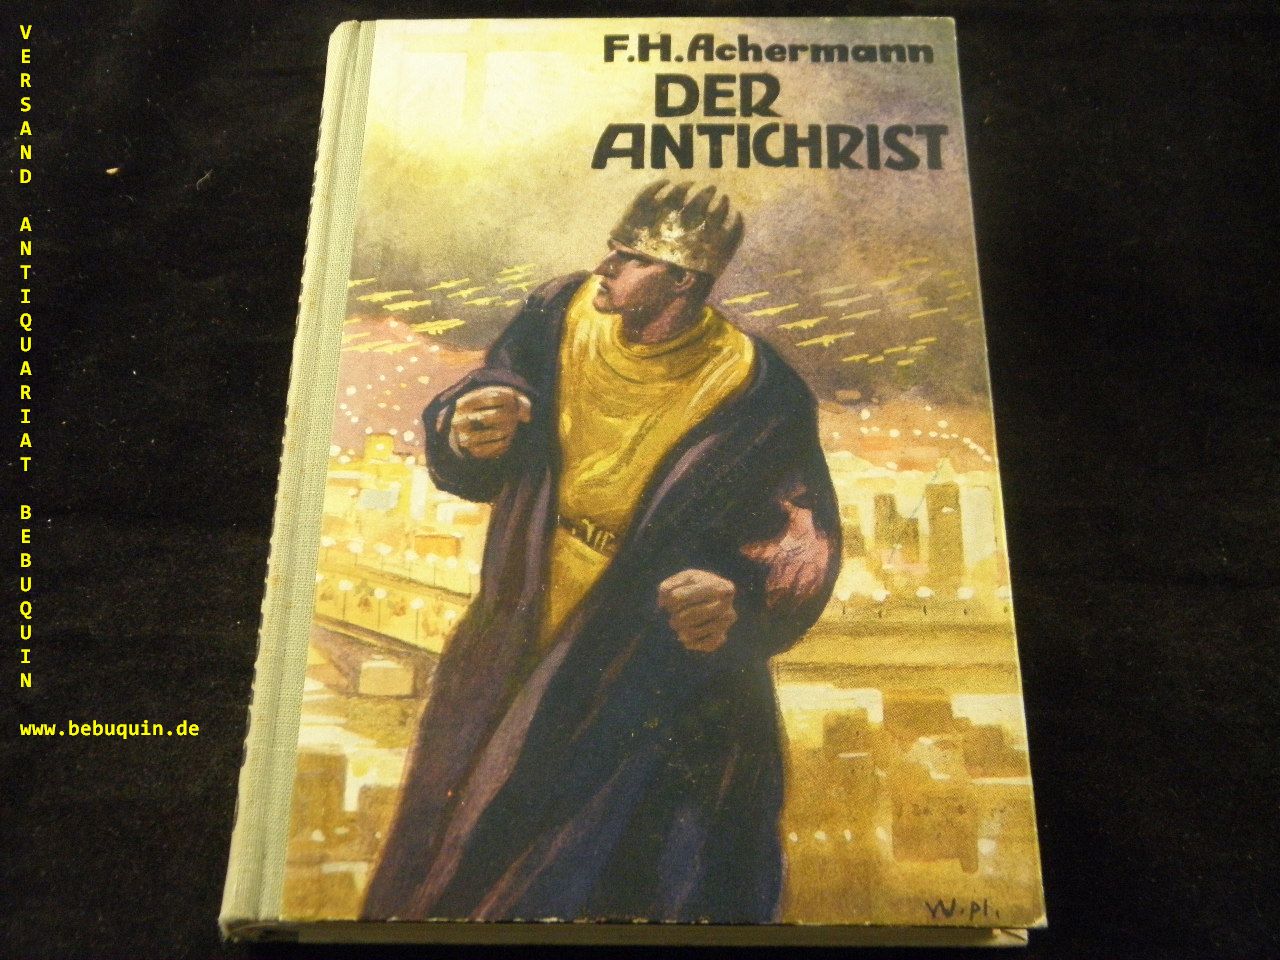 ACHERMANN, F.H.: - Der Antichrist.   Zukunftsroman auf Grund der biblischen Prophezeiungen und der heutigen Kulturentwicklung.